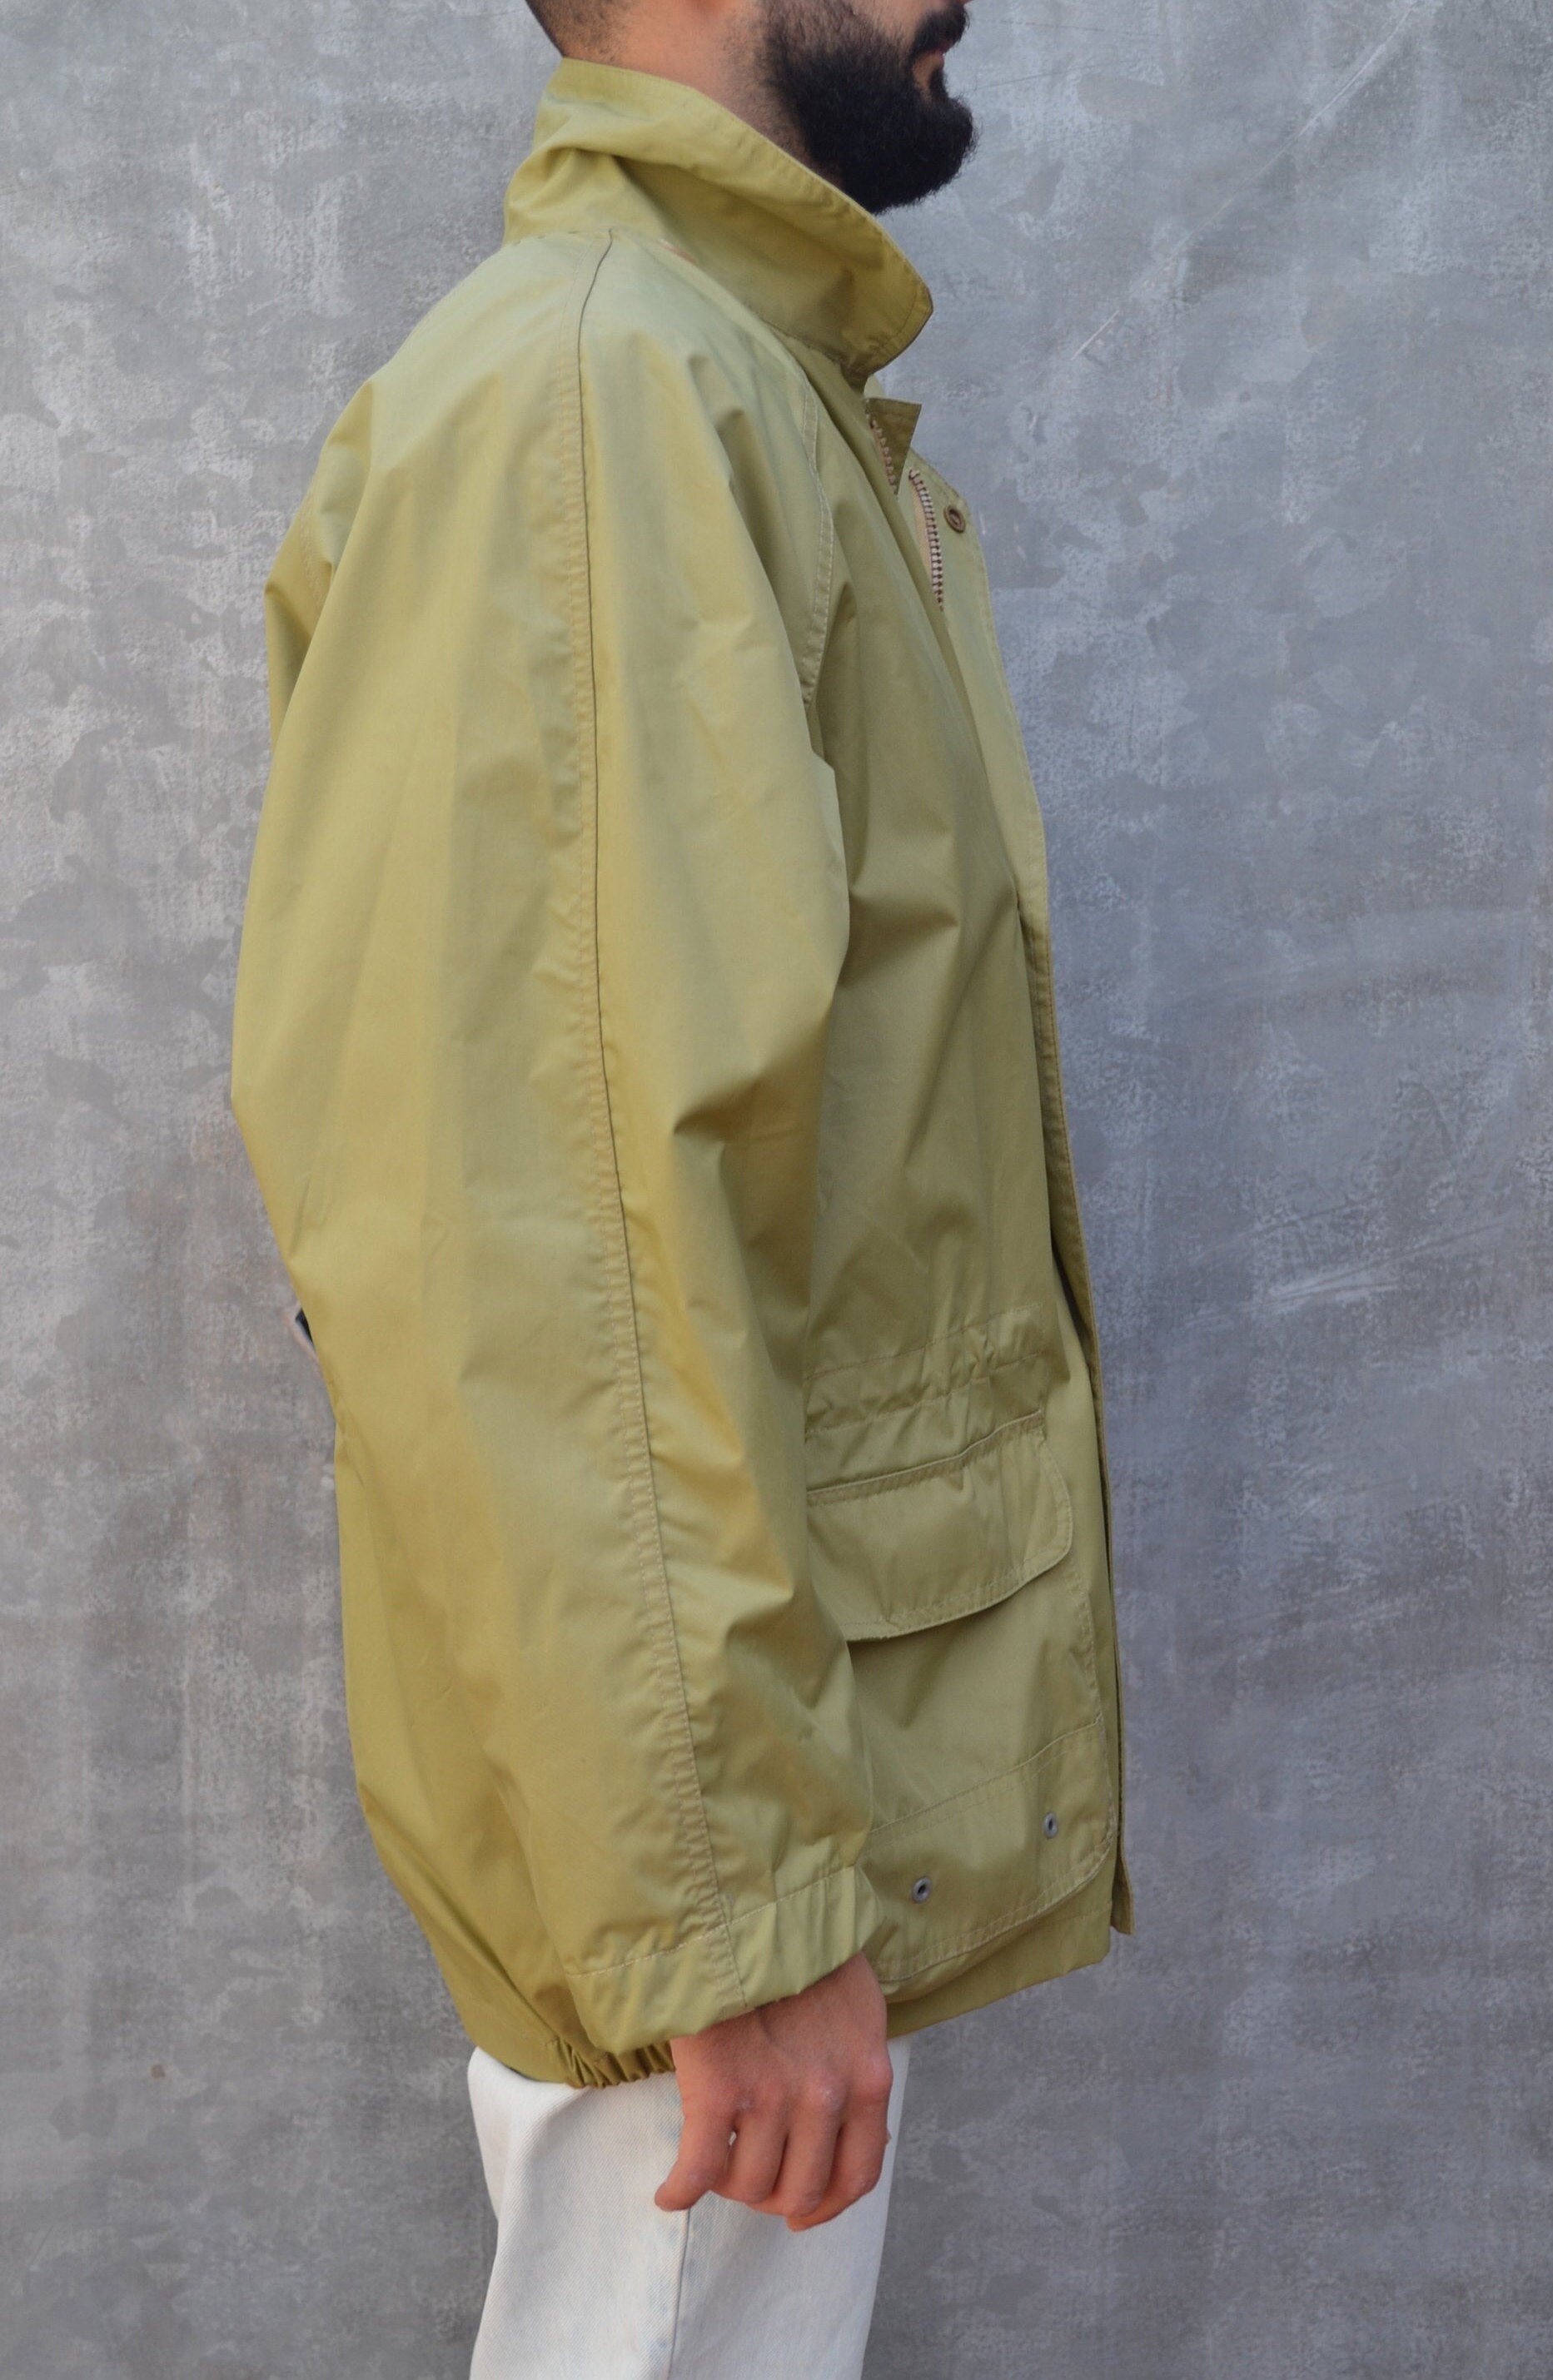 Ferrè Mustard vintage rain jacket windbreaker | Etsy